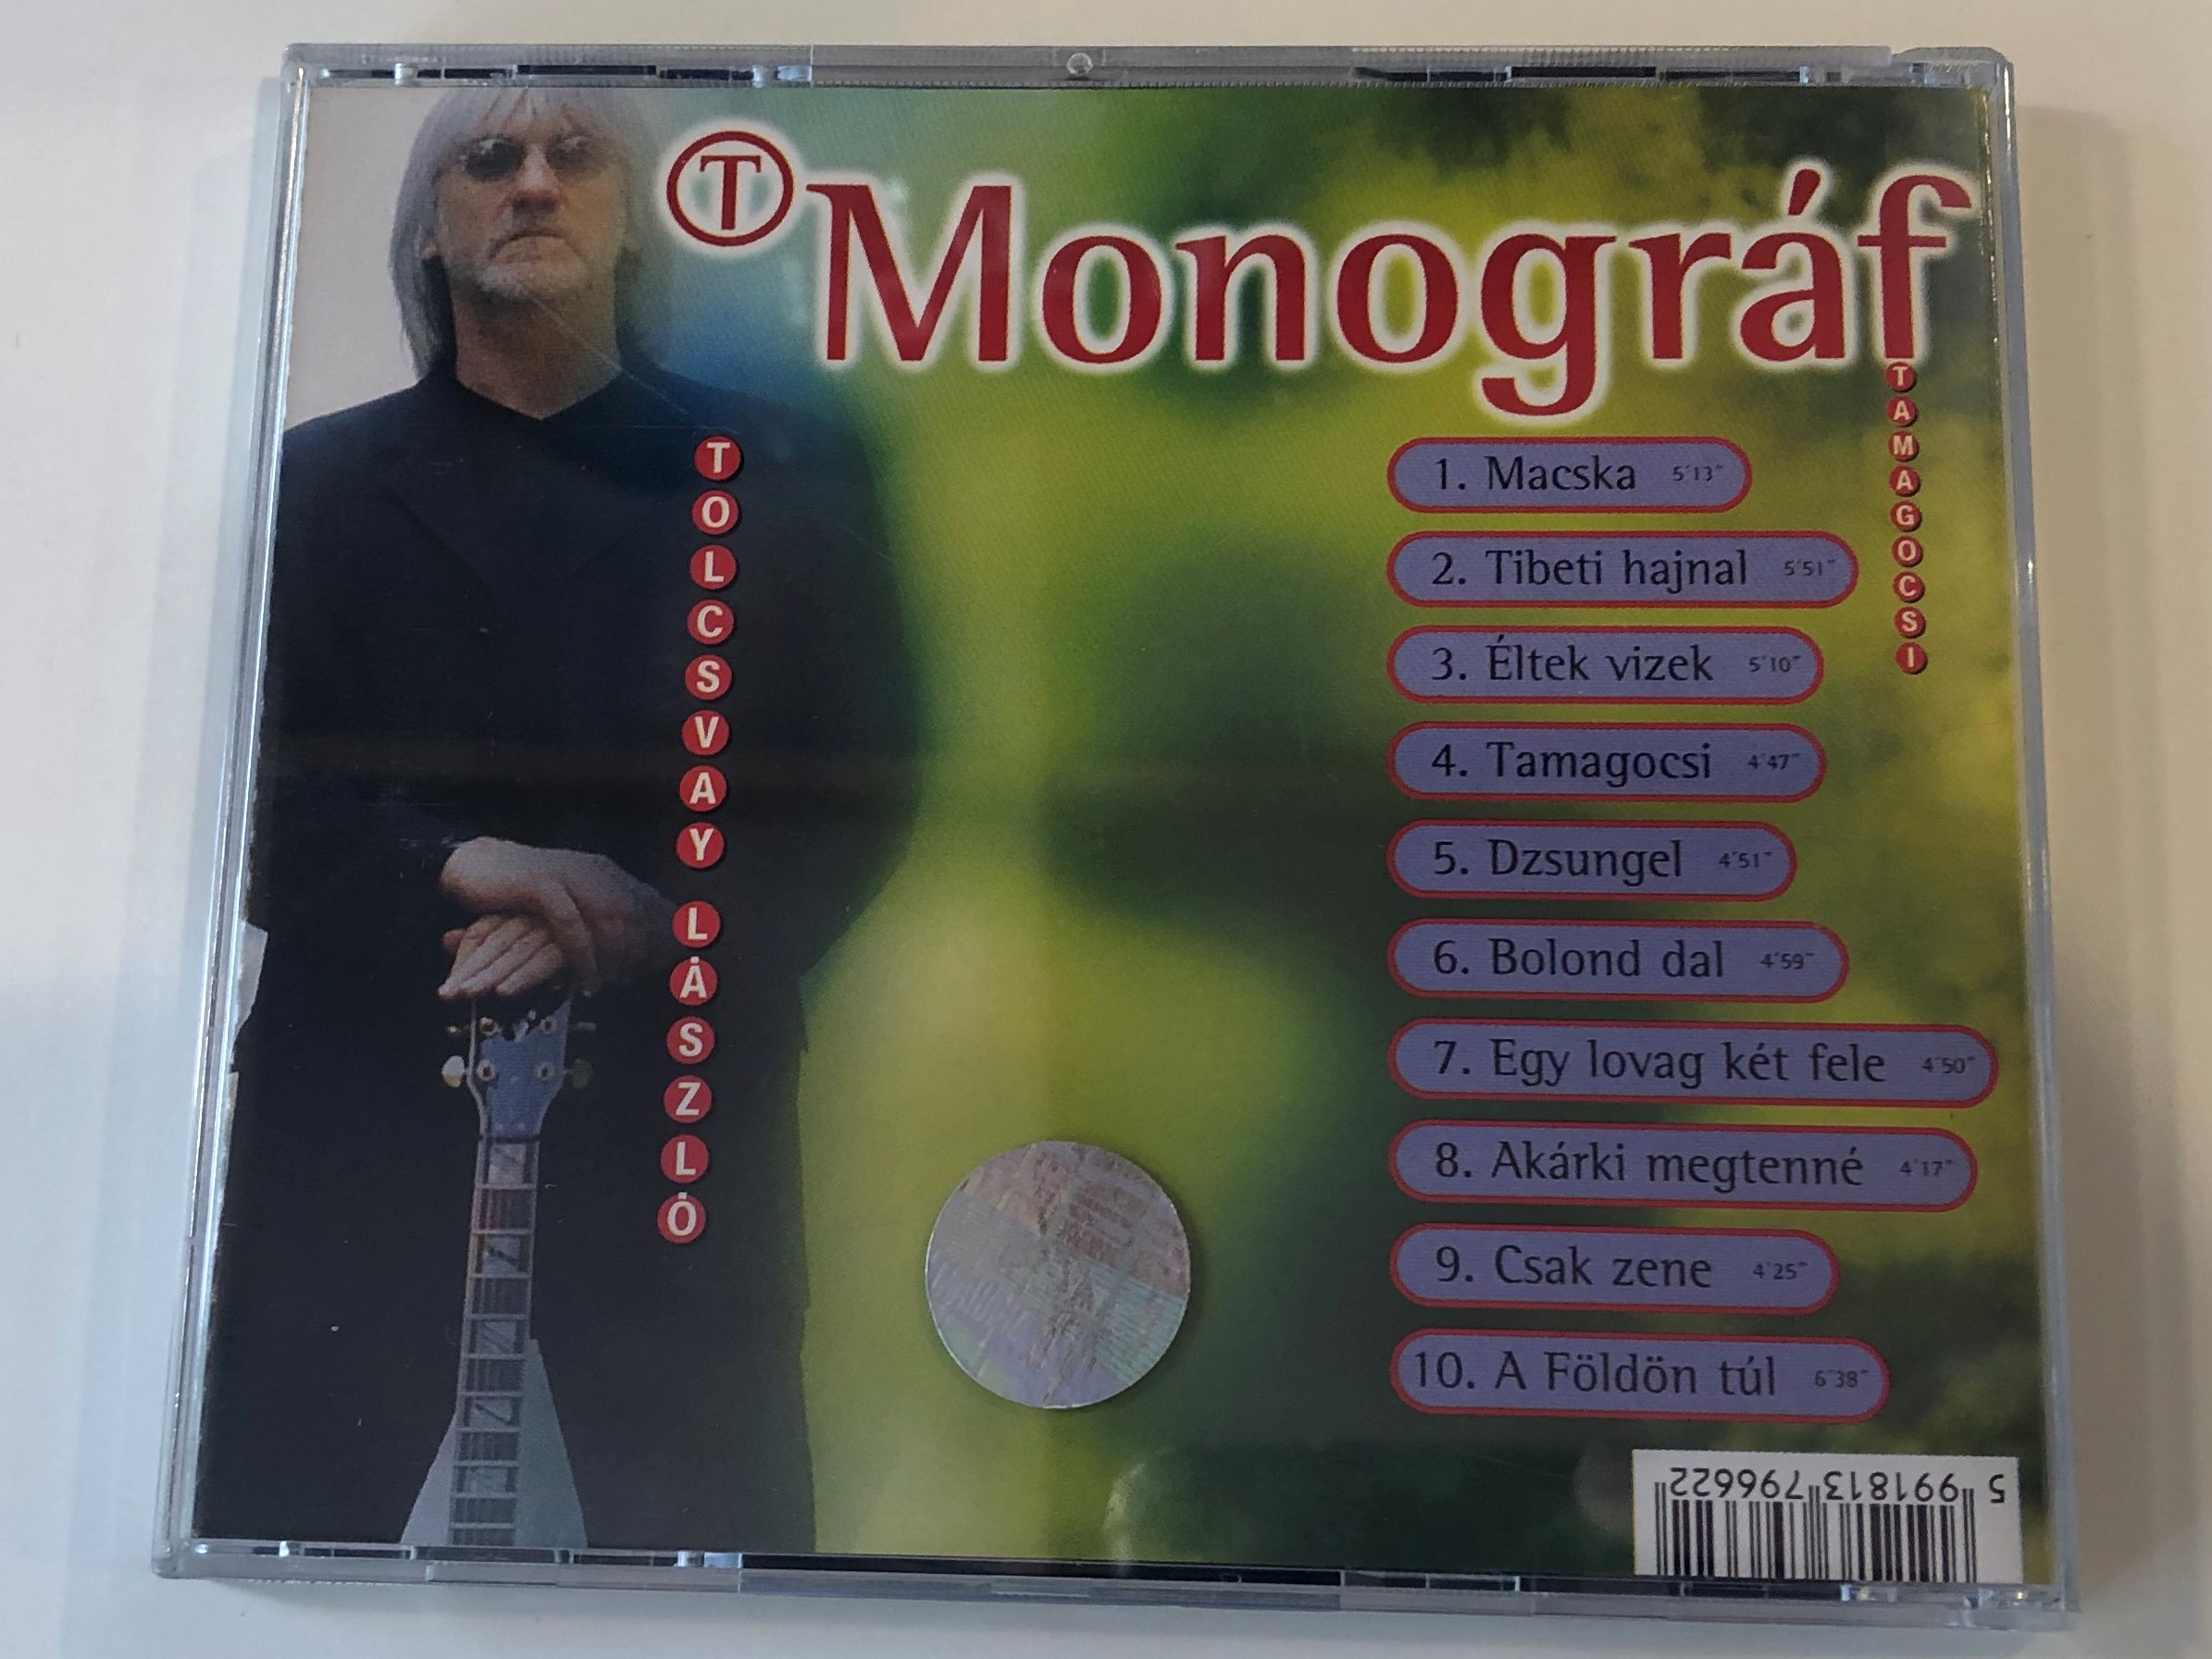 t-monogr-f-tamagocsi-hungaroton-audio-cd-1999-hcd-37966-4-.jpg